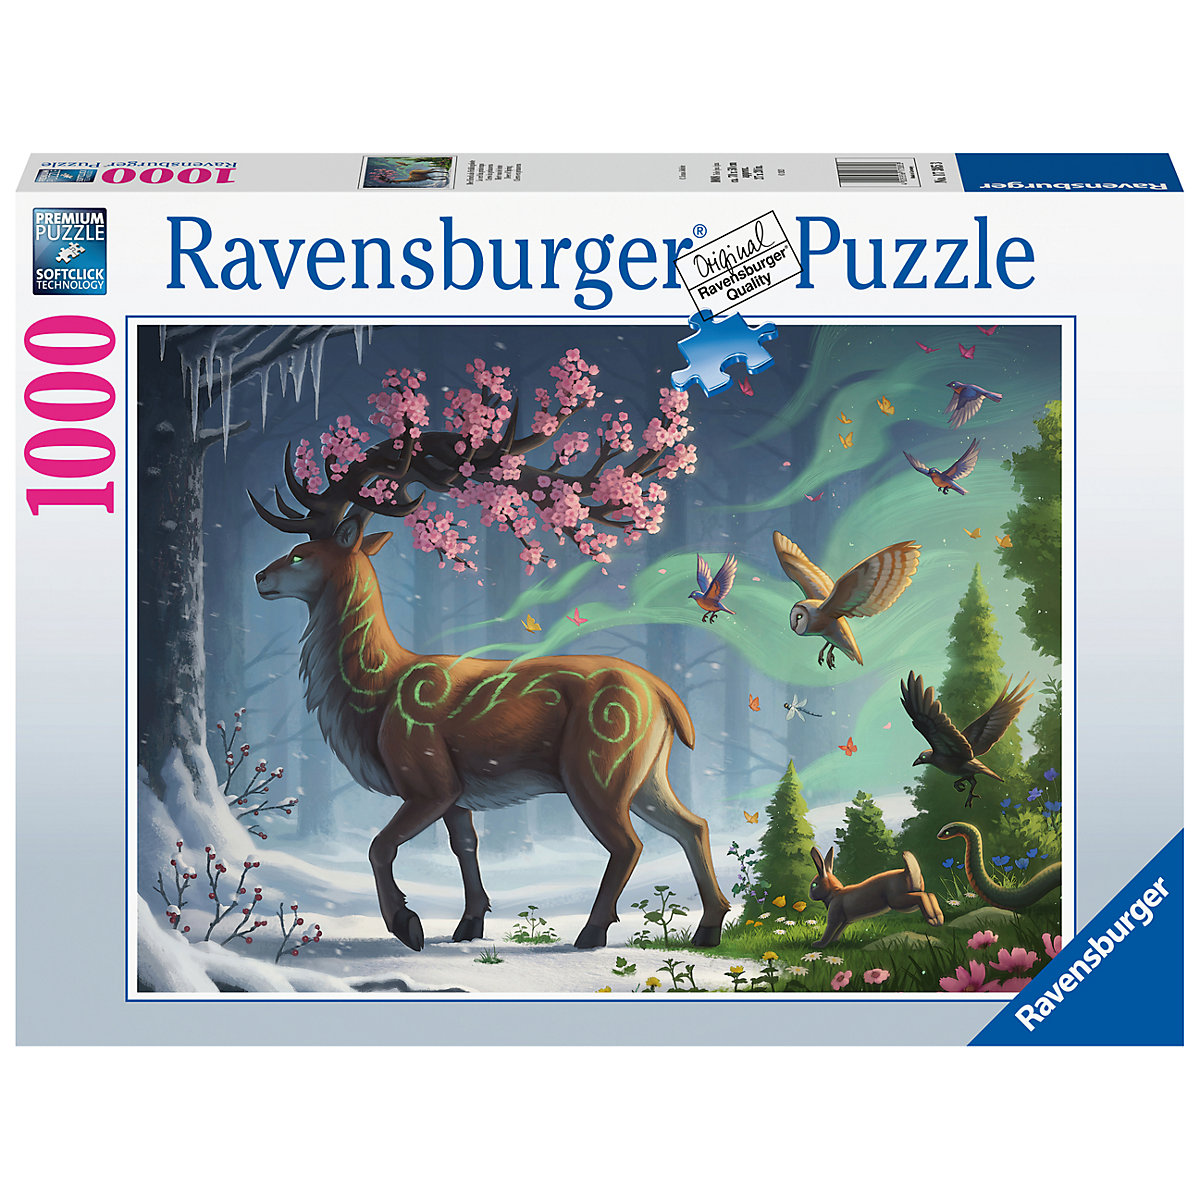 Ravensburger Puzzle 17385 Der Hirsch als Frühlingsbote 1000 Teile Puzzle für Erwachsene und Kinder ab 14 Jahren